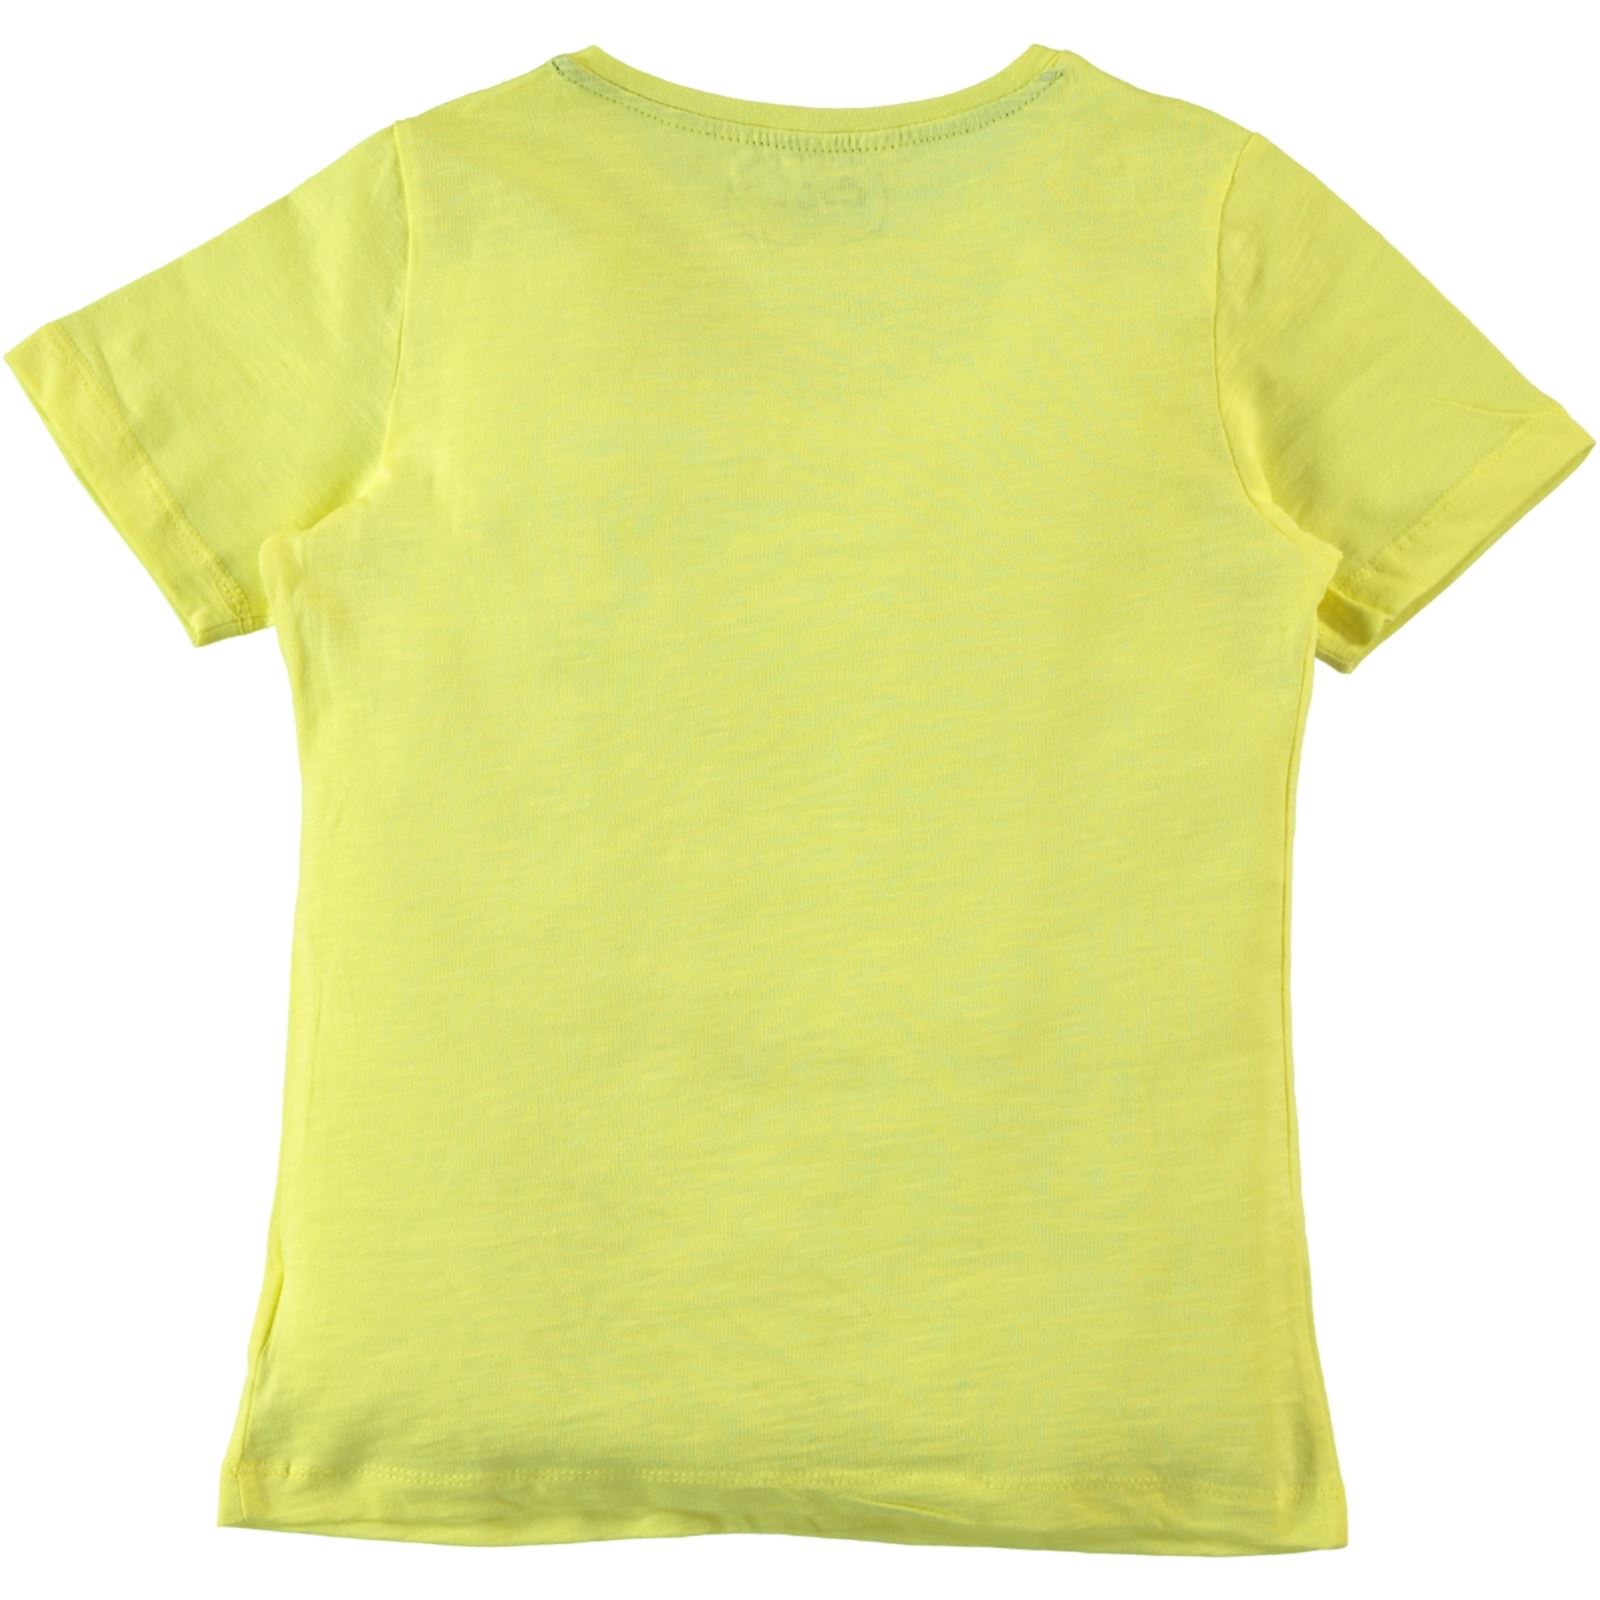 Cvl Erkek Çocuk Tişört 6-9 Yaş Sarı